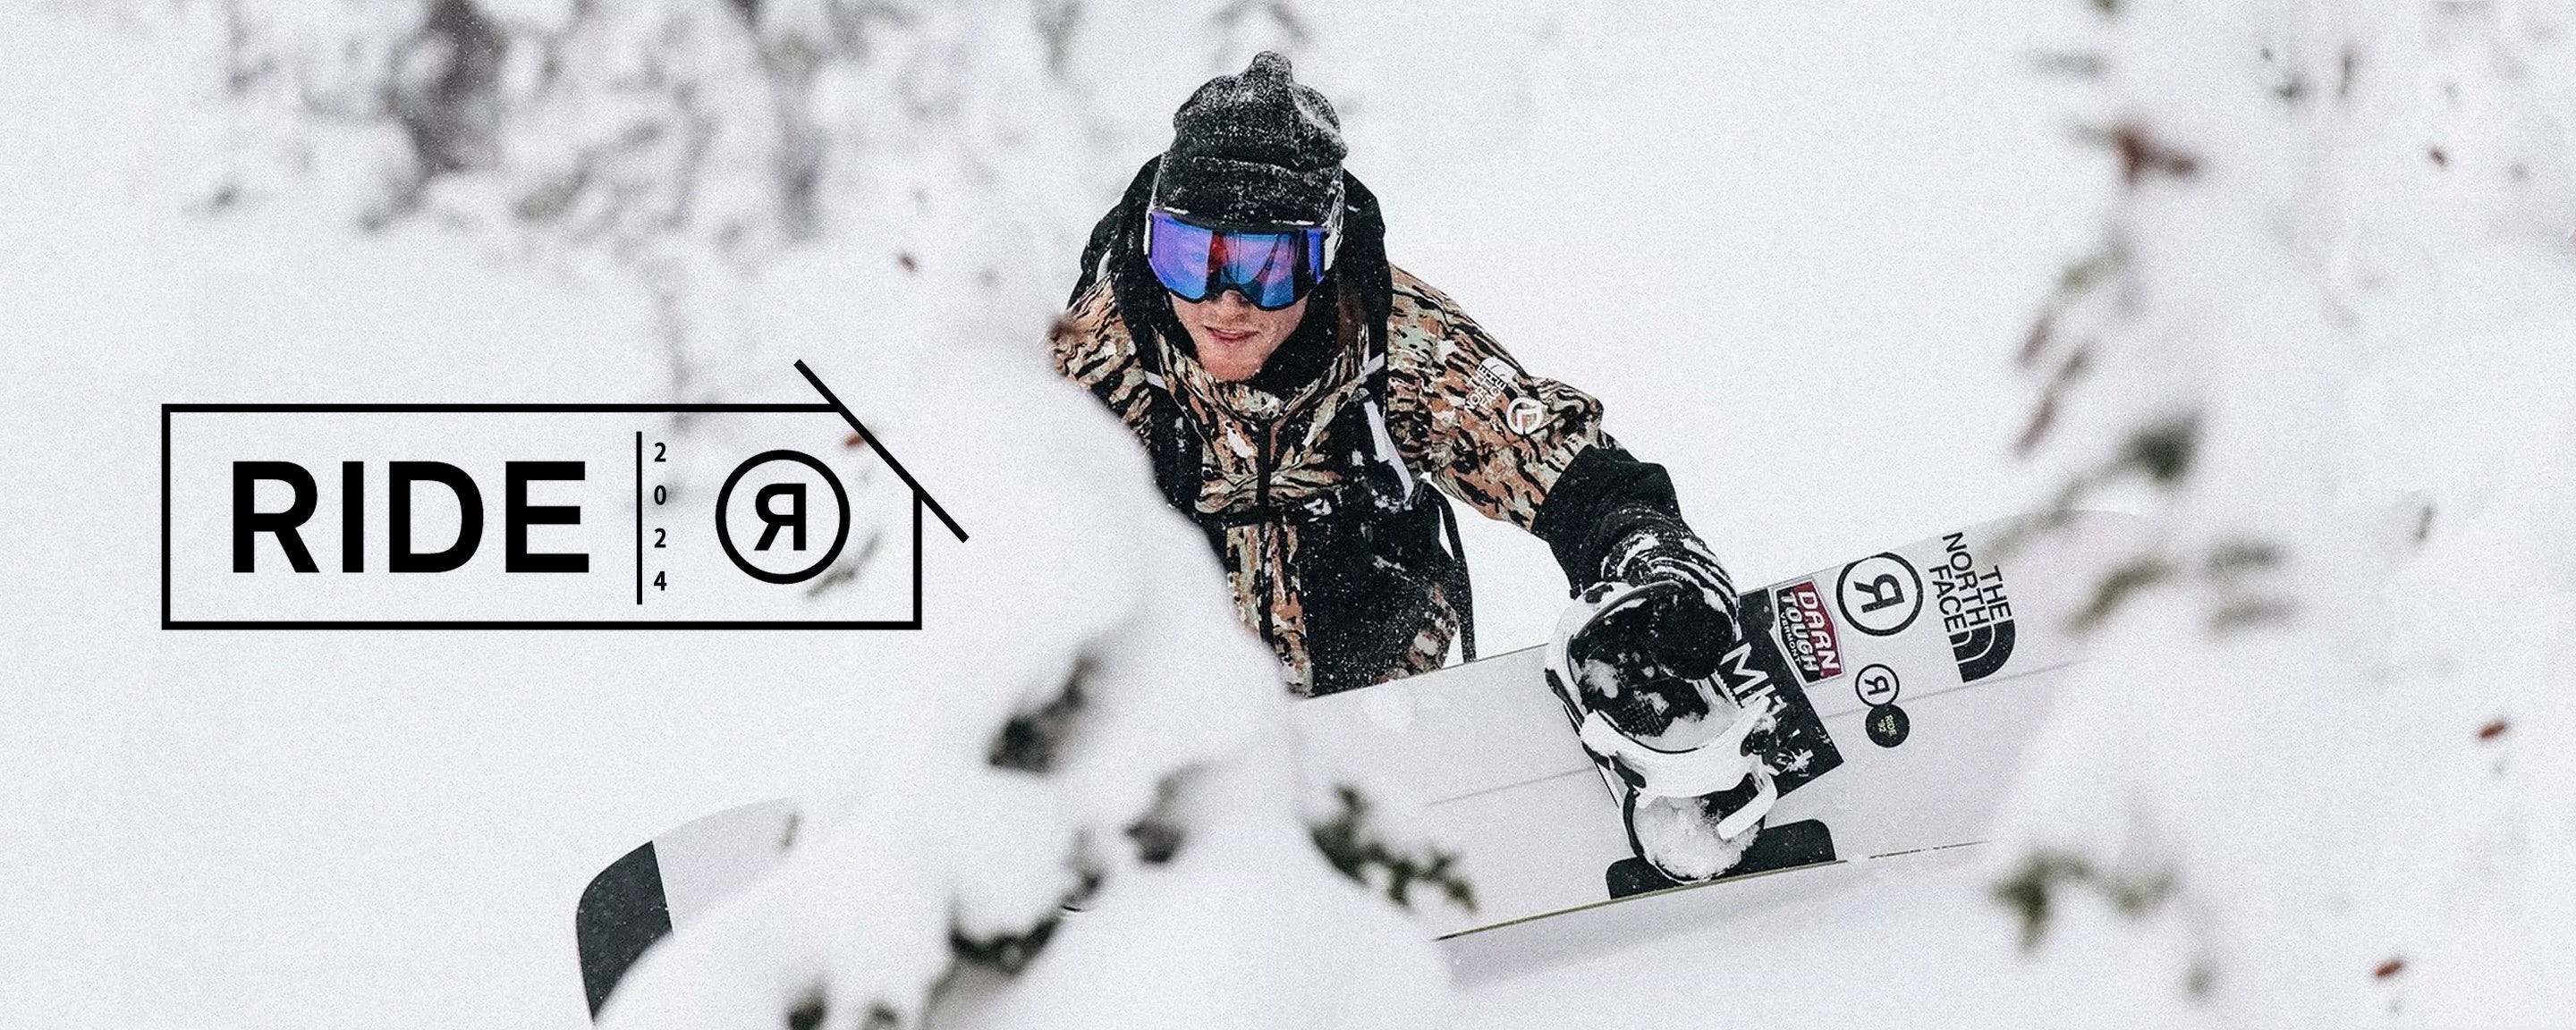 The Boardroom Shop - Buy Snowboards Online in Canada